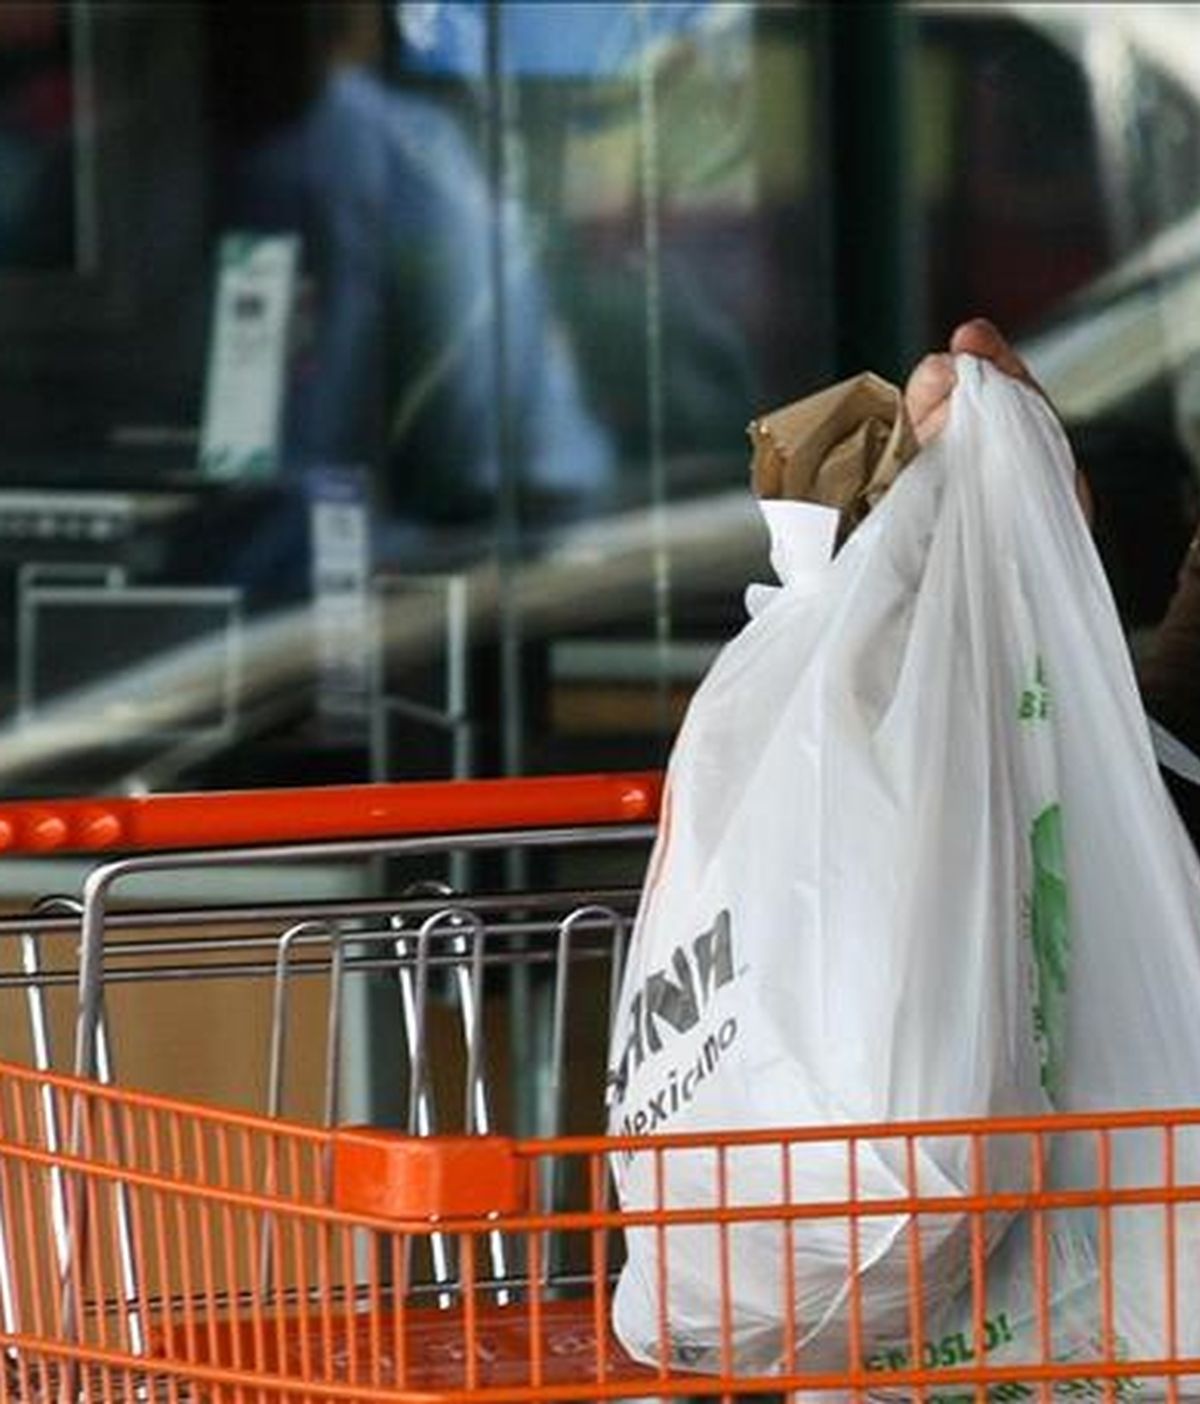 Una mujer compra productos básicos en un supermercado. EFE/Archivo